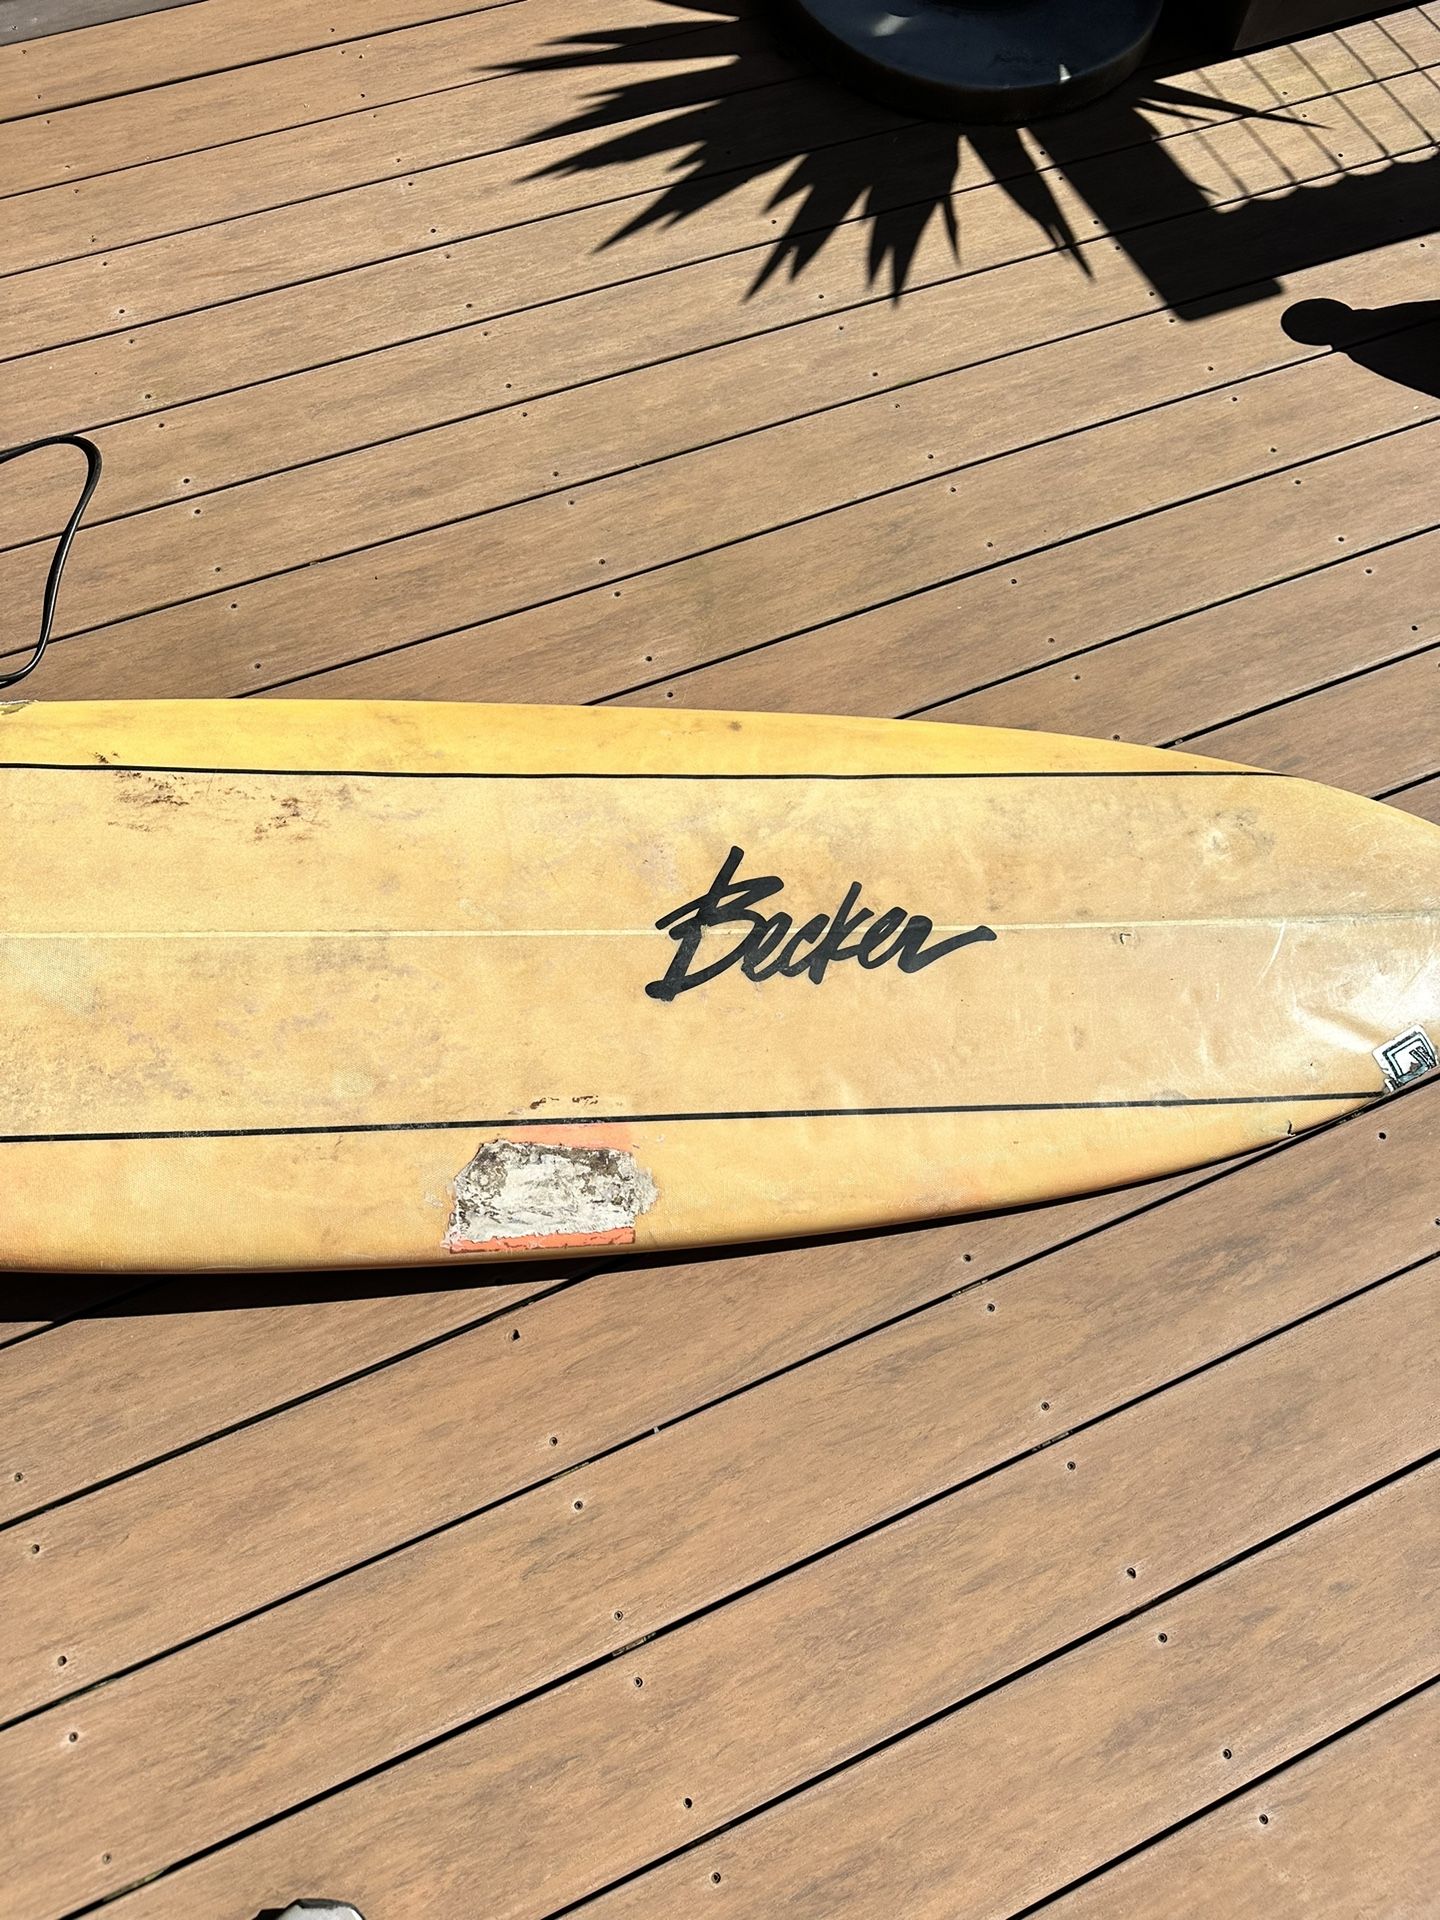 Becker 8ft Surfboard